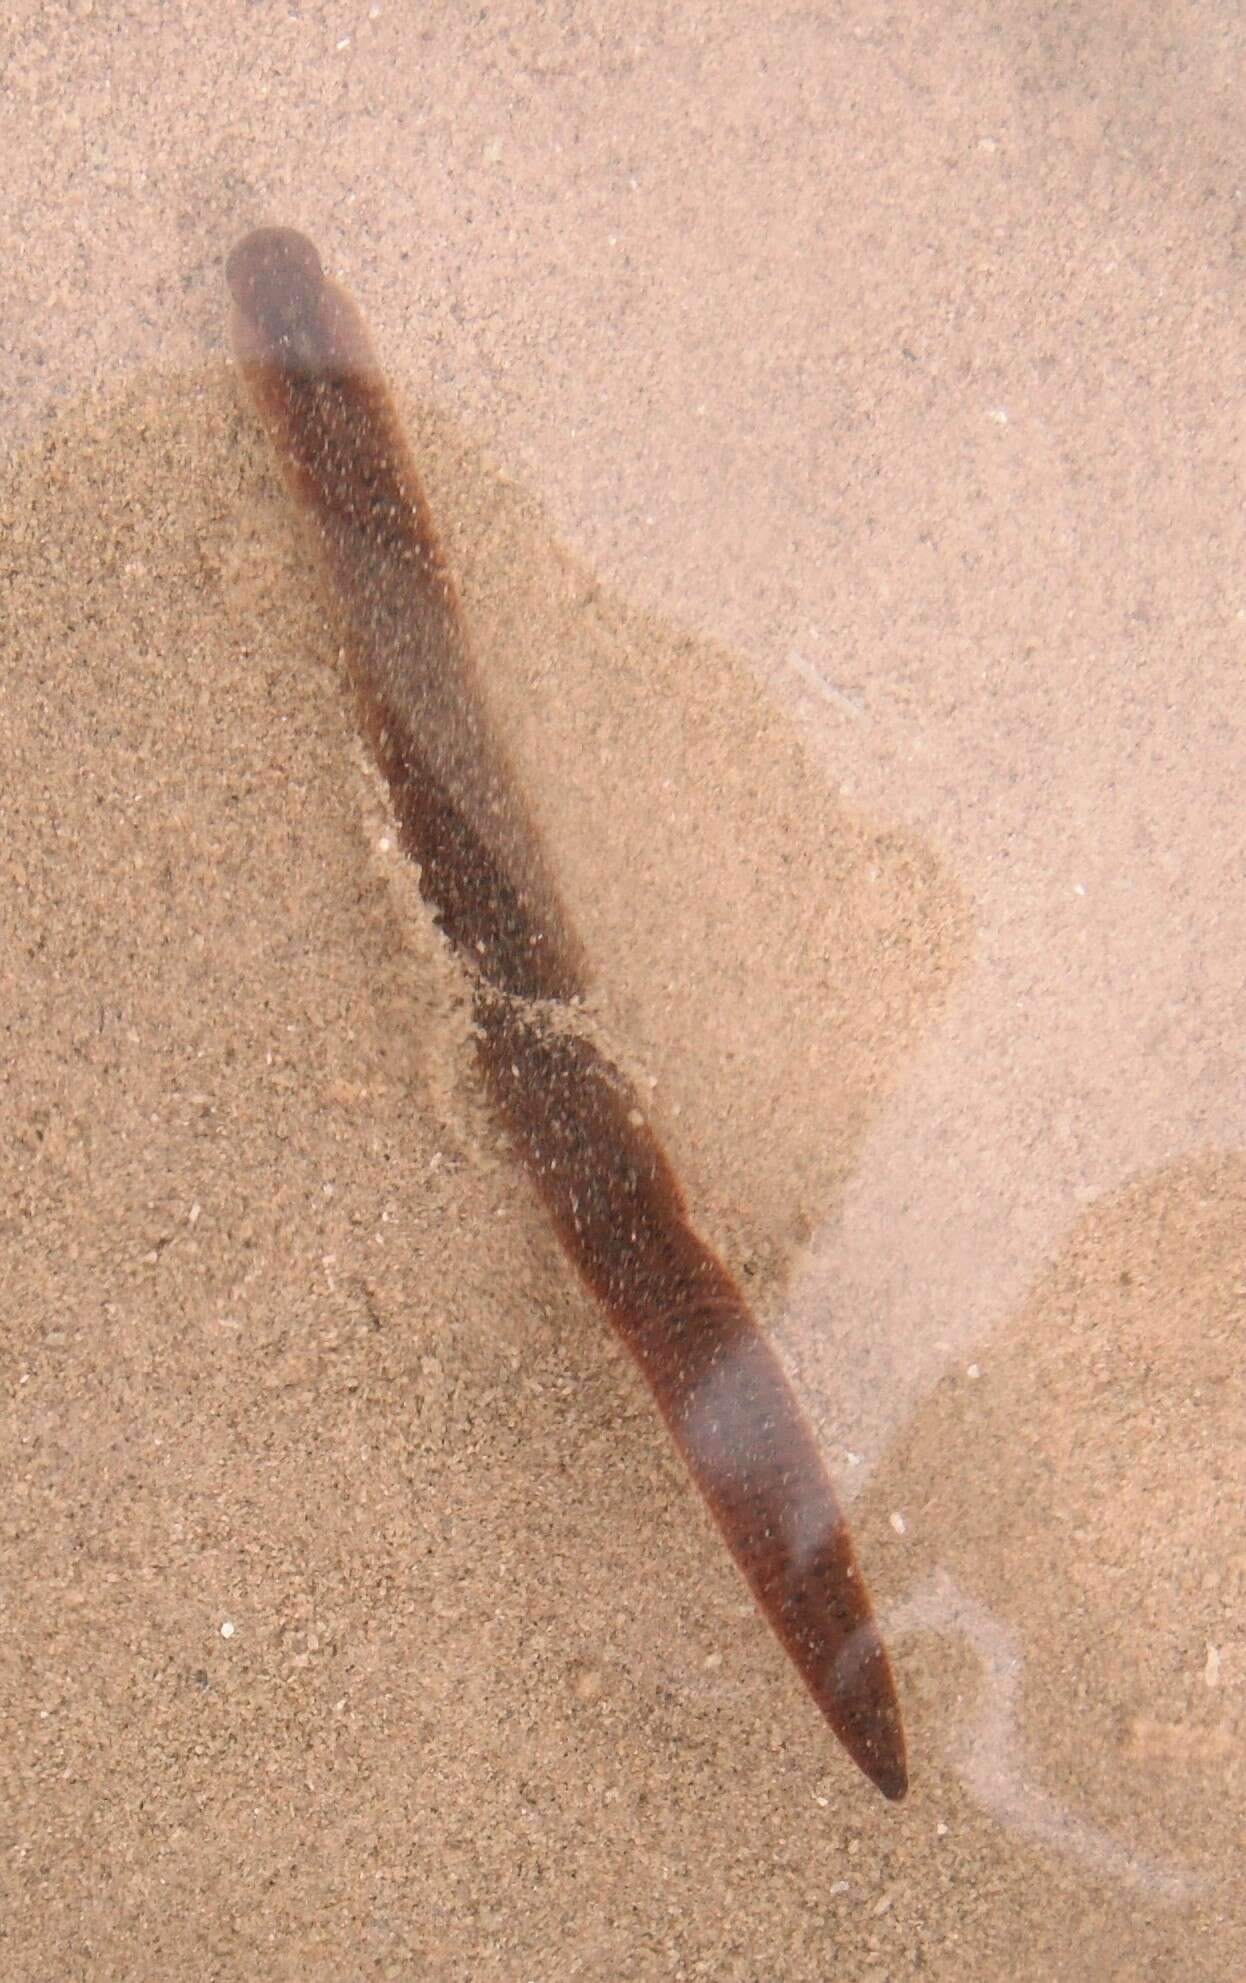 Image of Erpobdella punctata (Leidy 1870)